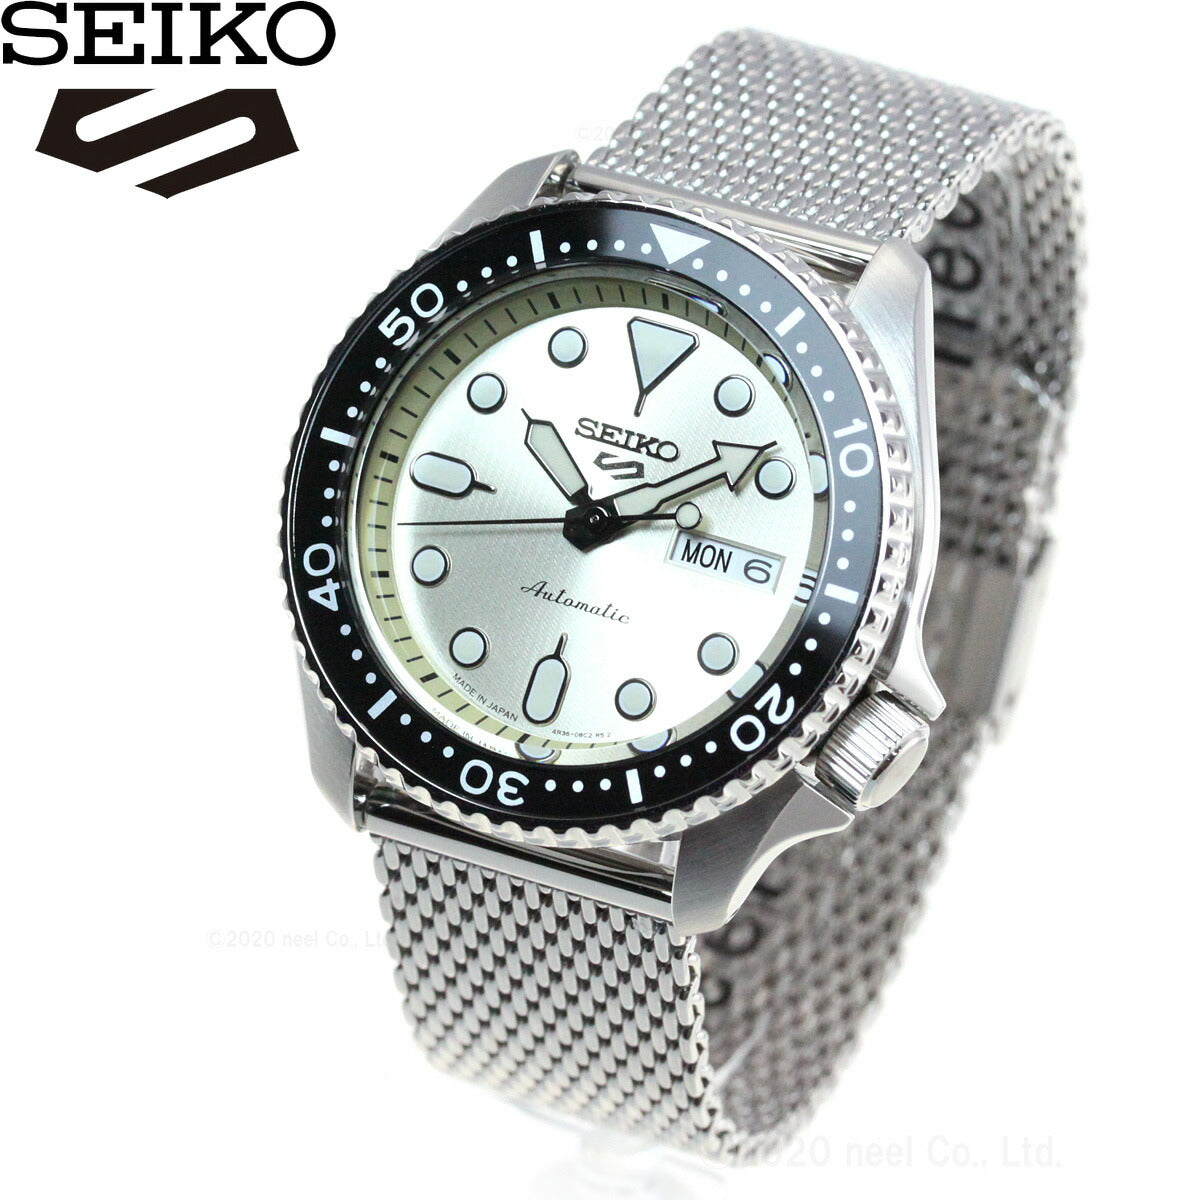 セイコー5 スポーツ SEIKO 5 SPORTS 自動巻き メカニカル 腕時計